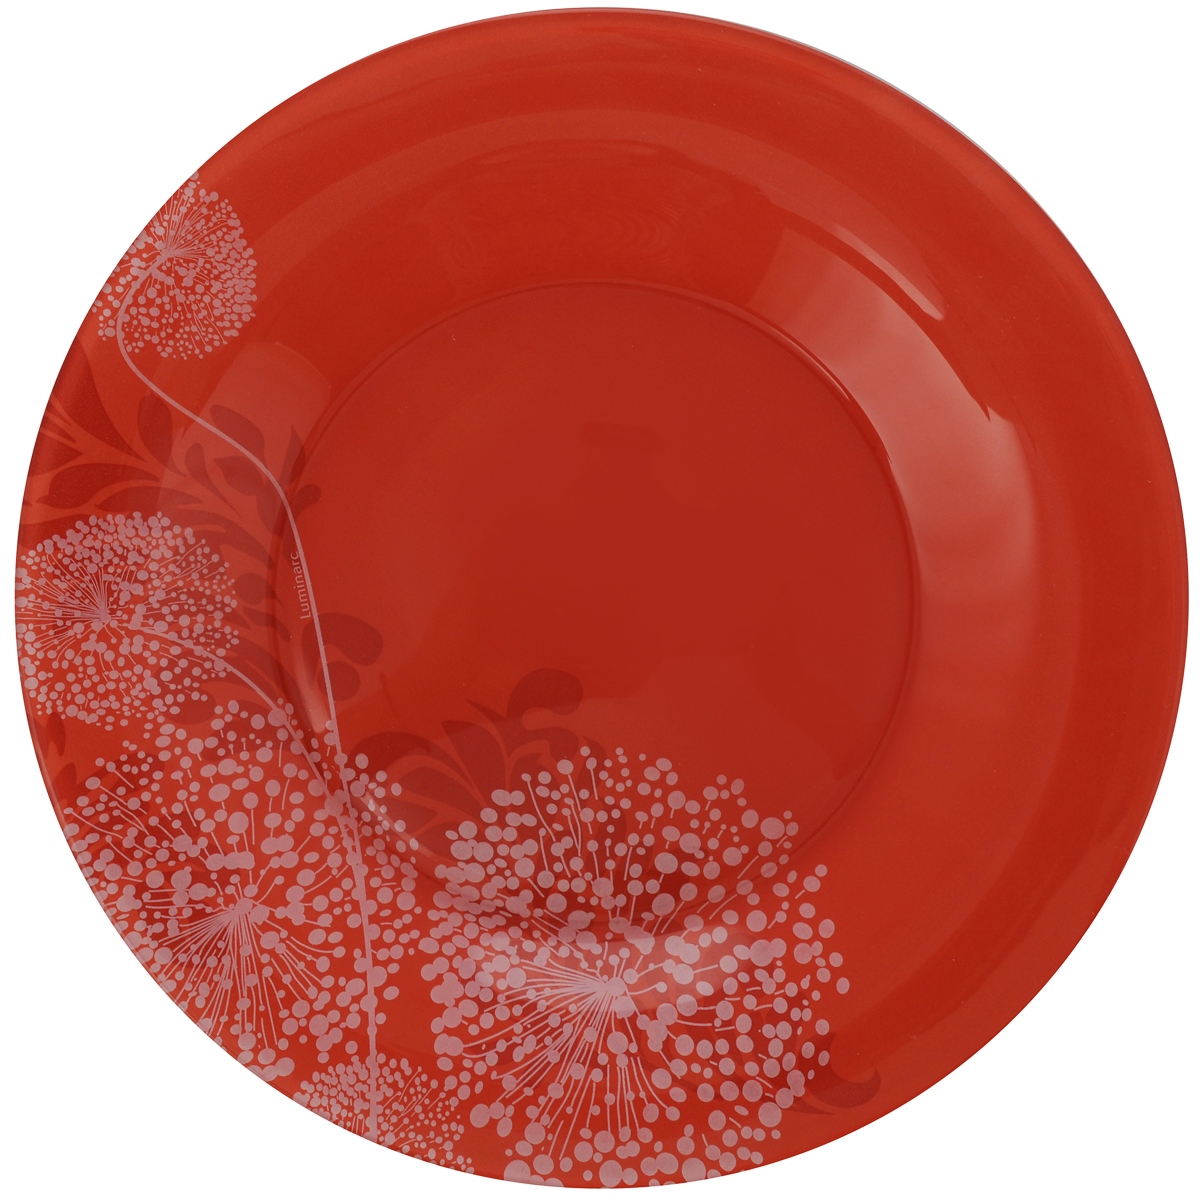 Тарелки красного цвета. Luminarc тарелка обеденная piume 25 см. Тарелка десертная Luminarc. Luminarc тарелки Red Dream. Тарелки Люминарк красные.